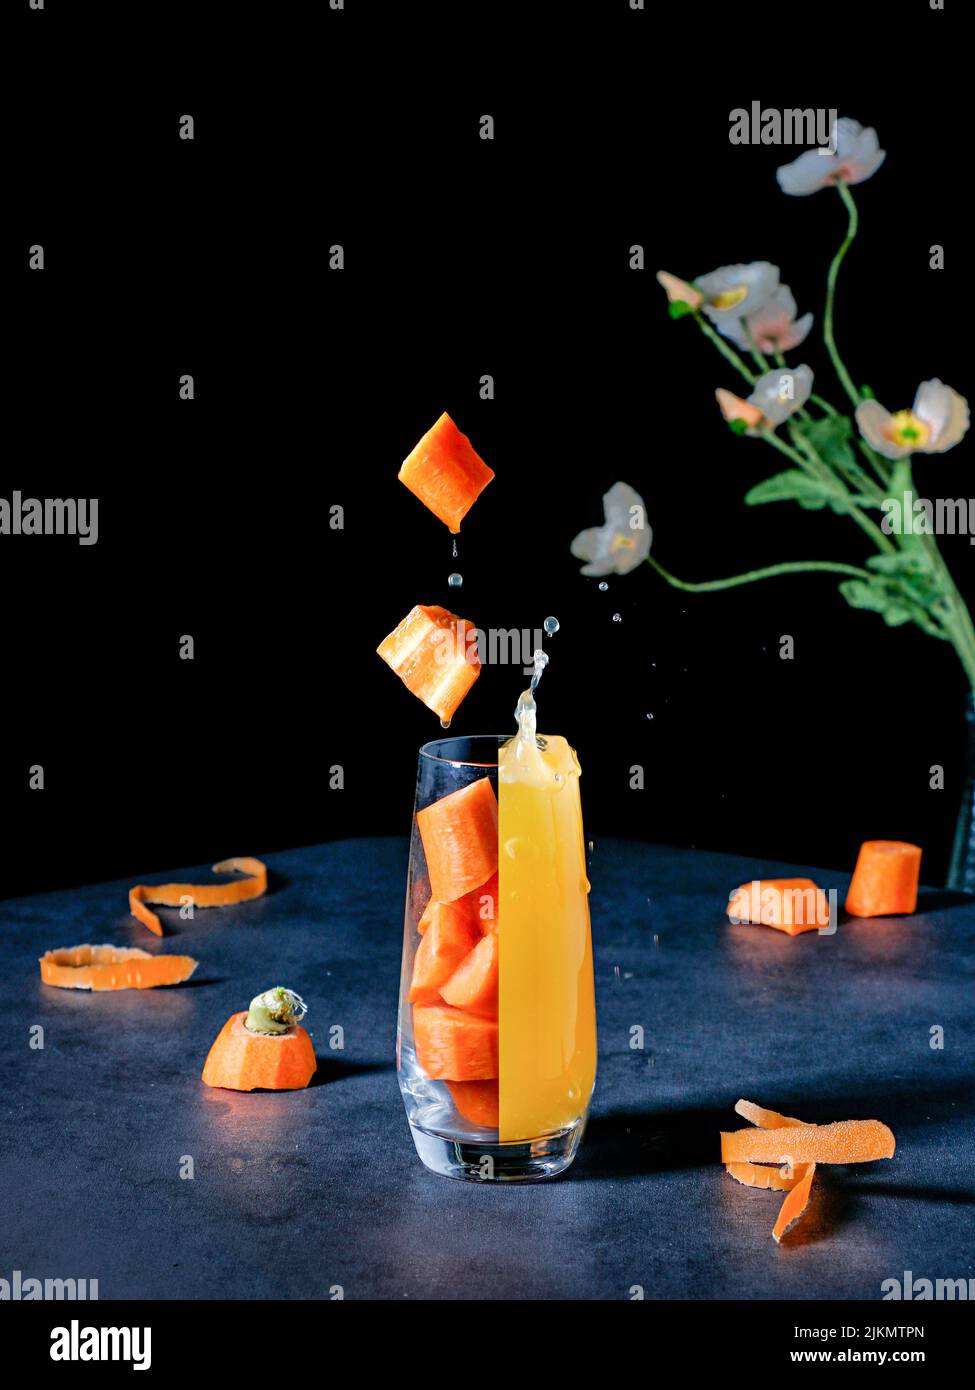 Un vivace shot estetico di un bicchiere diviso in un succo fresco e pezzi di carota Foto Stock